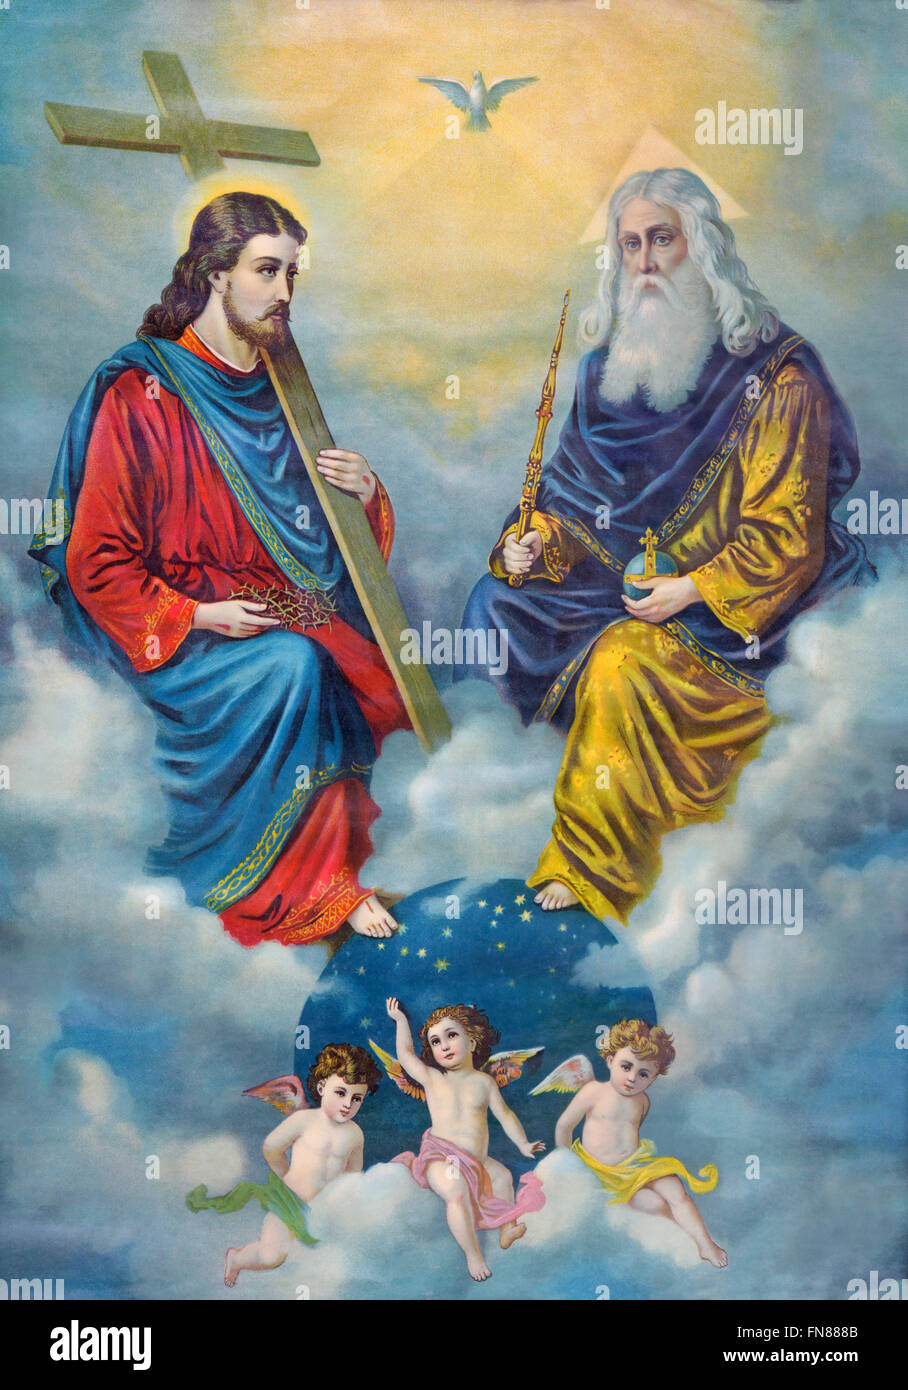 SEBECHLEBY, Slovacchia - 27 febbraio 2016: tipica immagine cattolica della Santissima Trinità stampato in Germania. Foto Stock